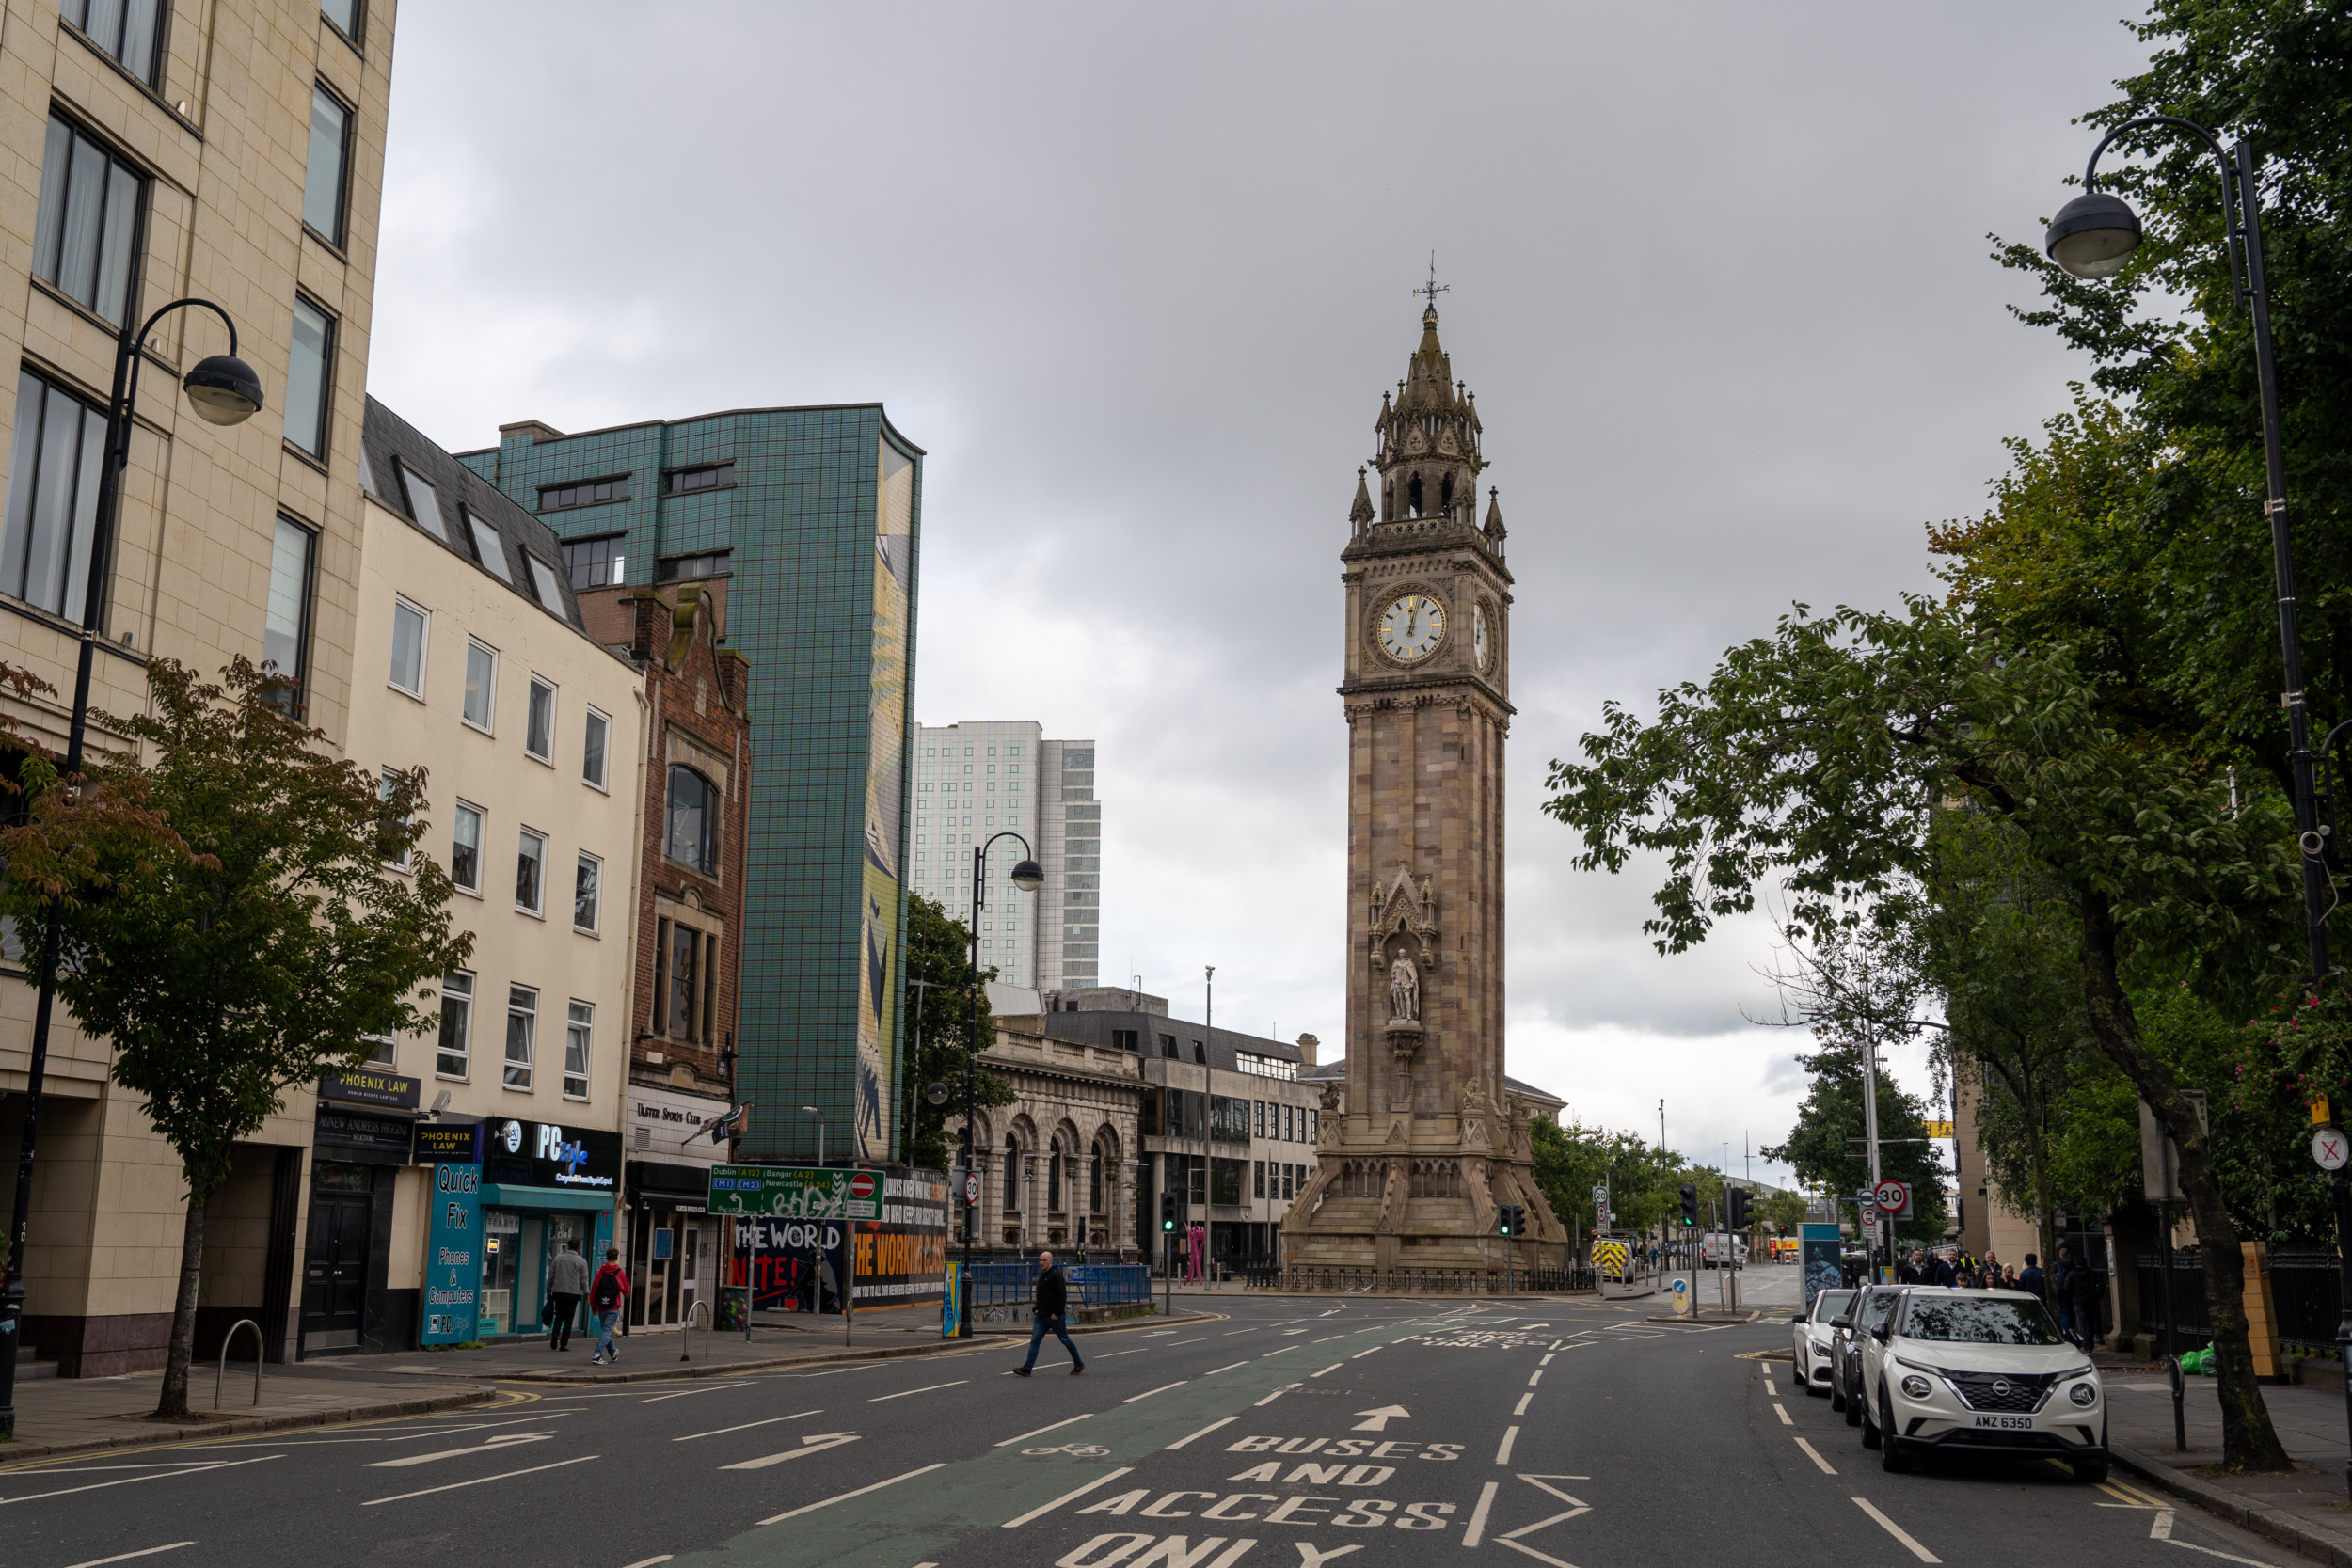 Der Albert Memorial Clock Tower befindet sich direkt in Belfast